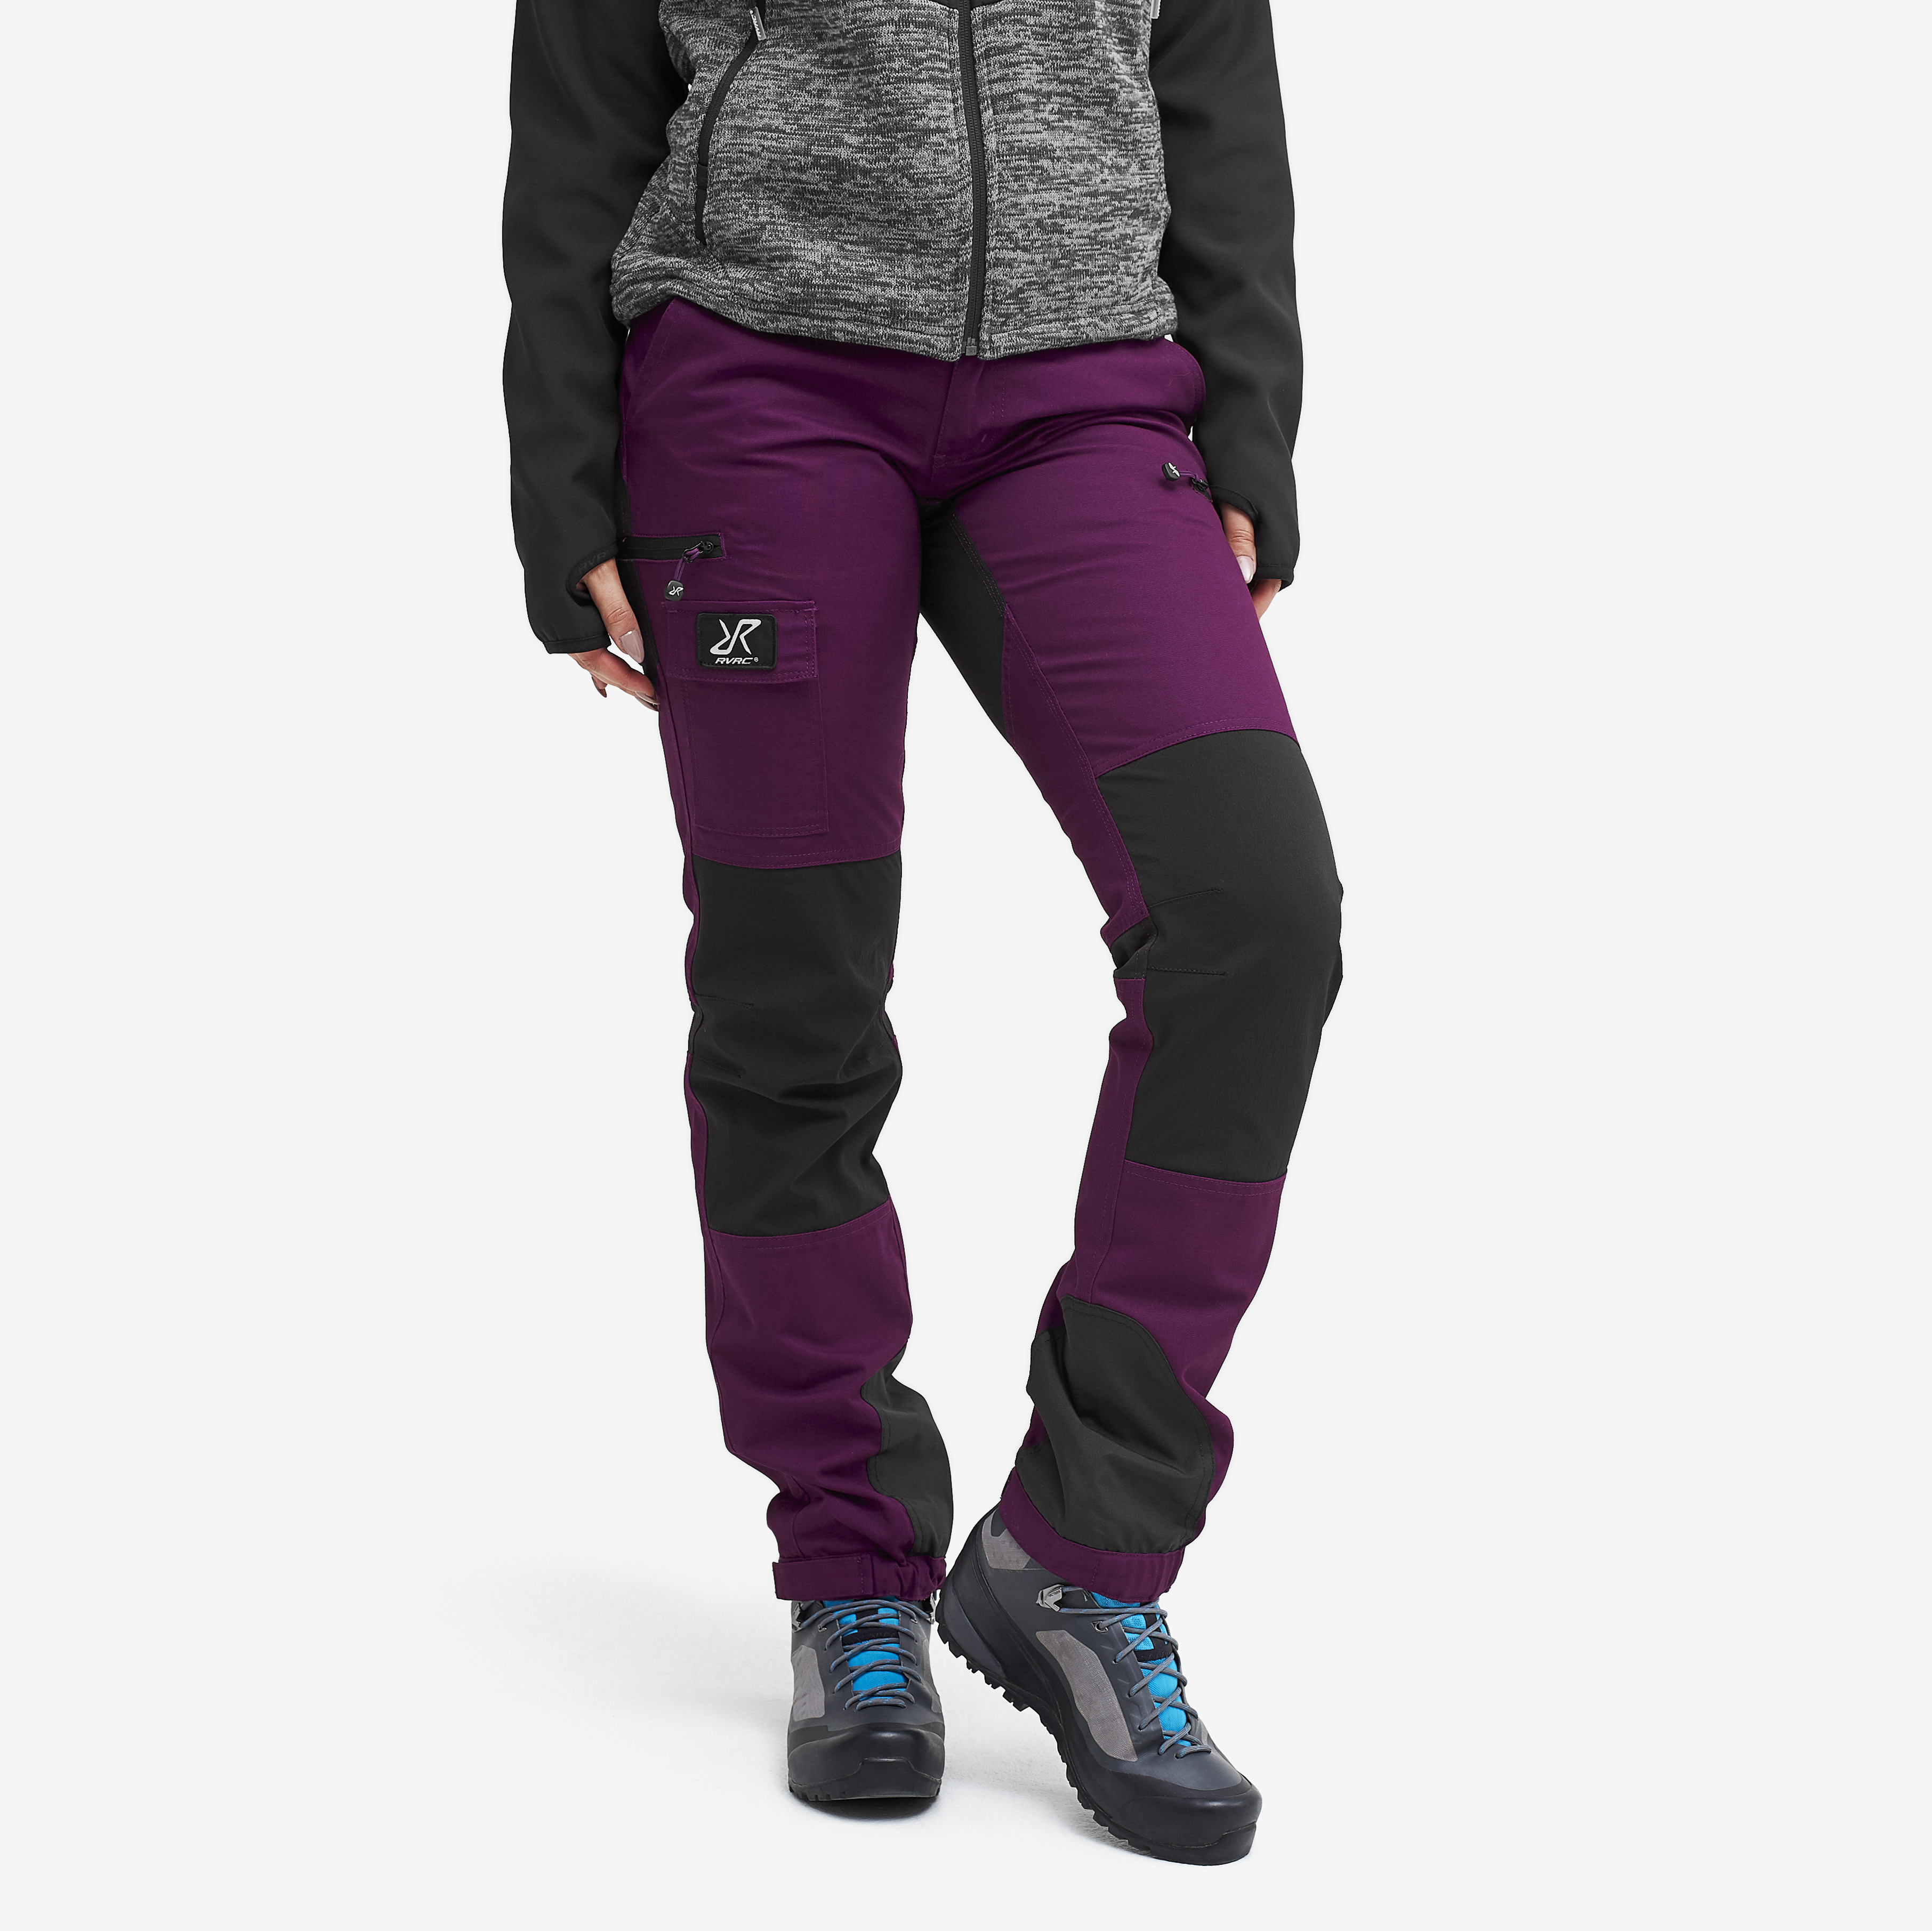 Nordwand walking trousers for women in purple